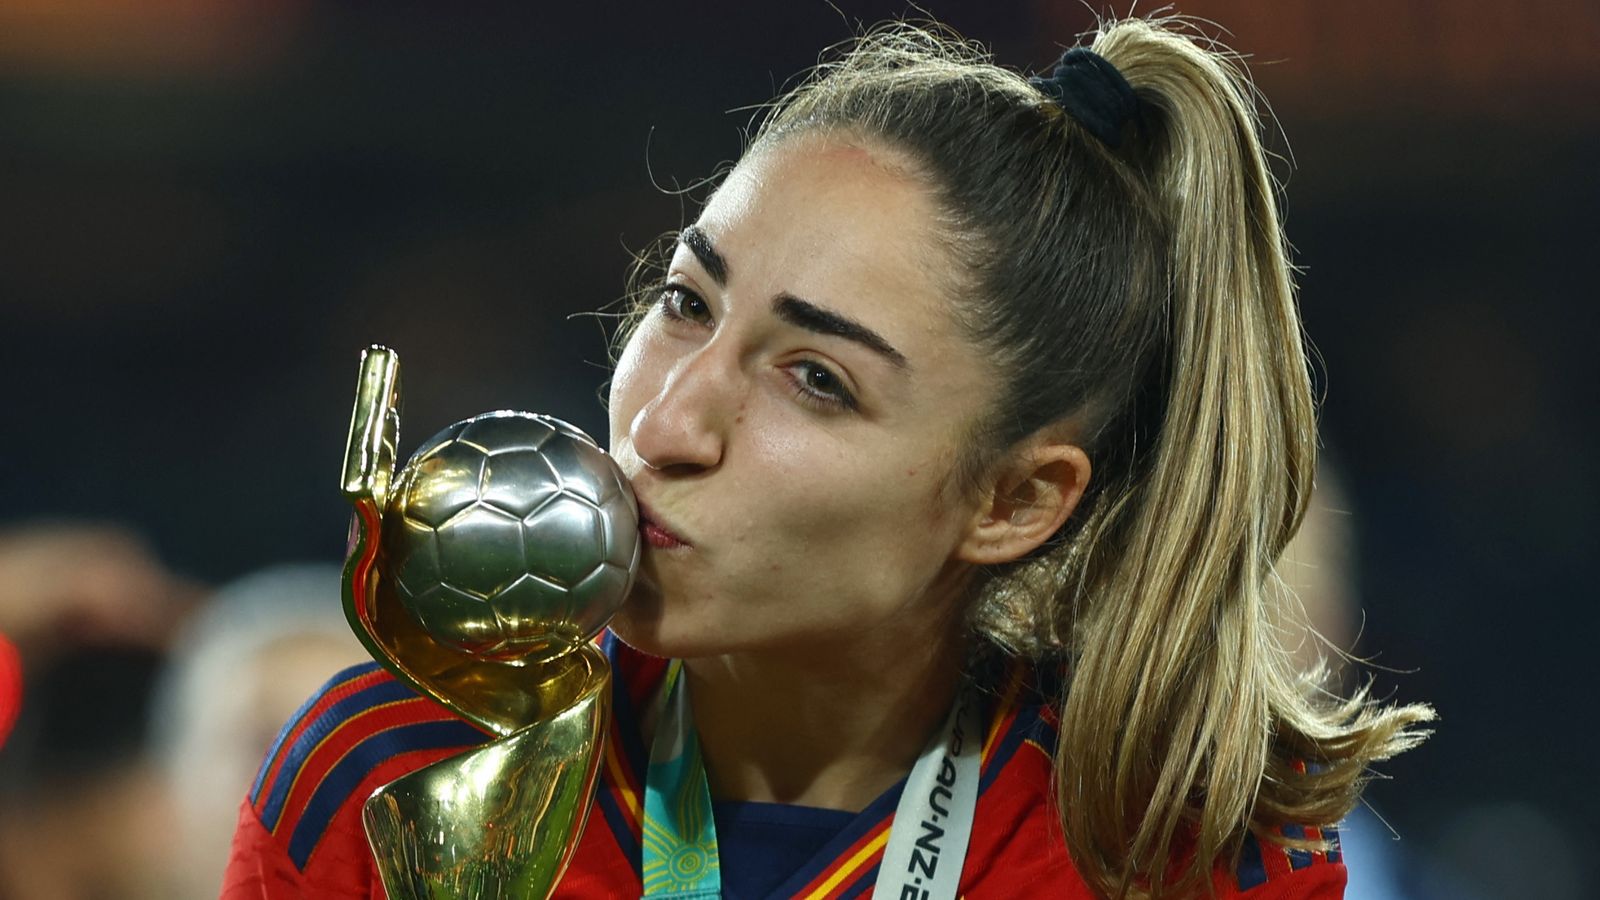 Coupe du monde féminine : l’Espagnole Olga Carmona apprend la mort de son père après le match |  Nouvelles du monde